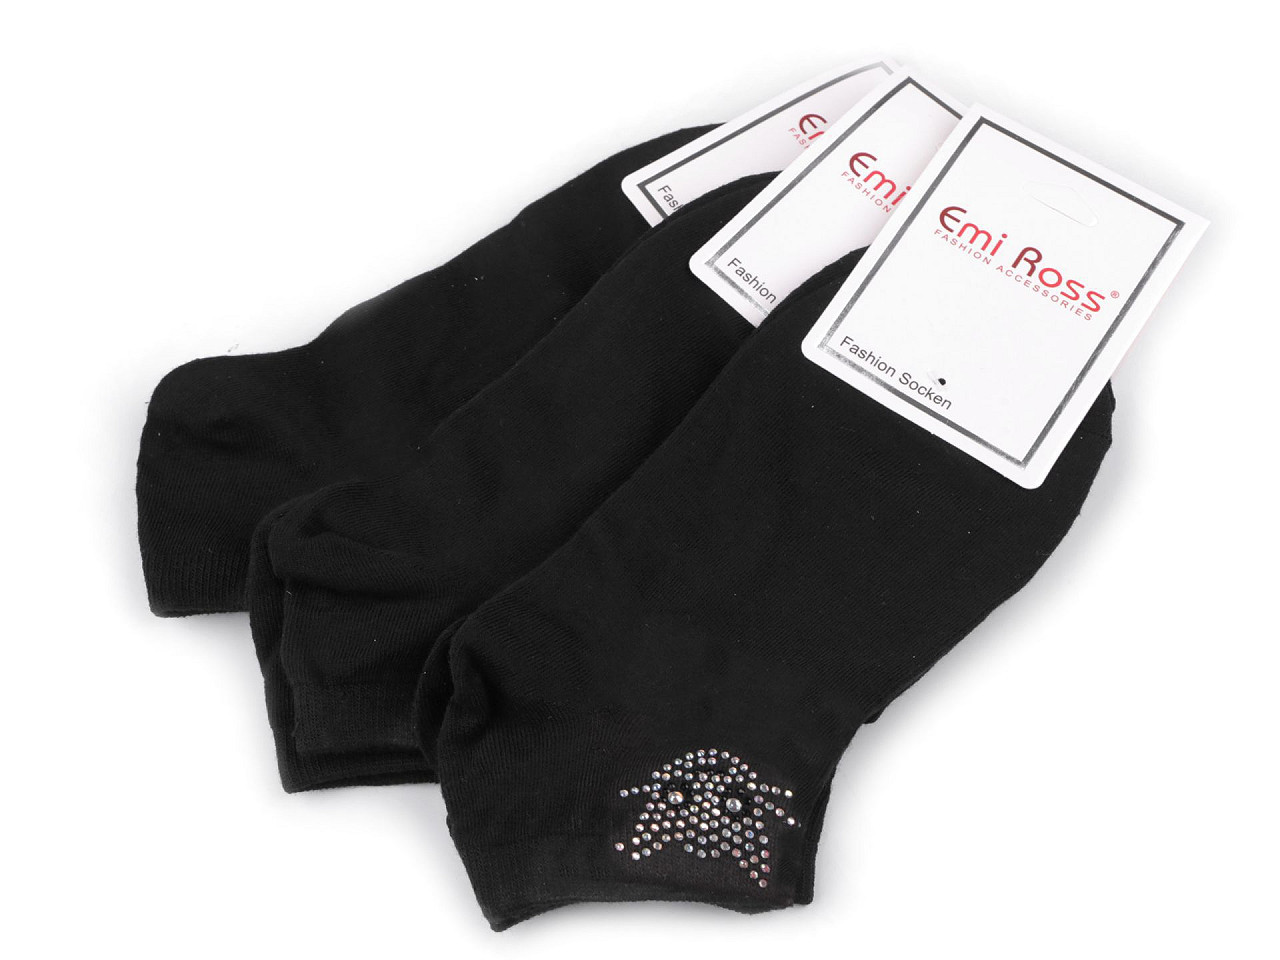 Dámské bavlněné ponožky kotníkové s kamínky Emi Ross, barva 56 (35-38) černá